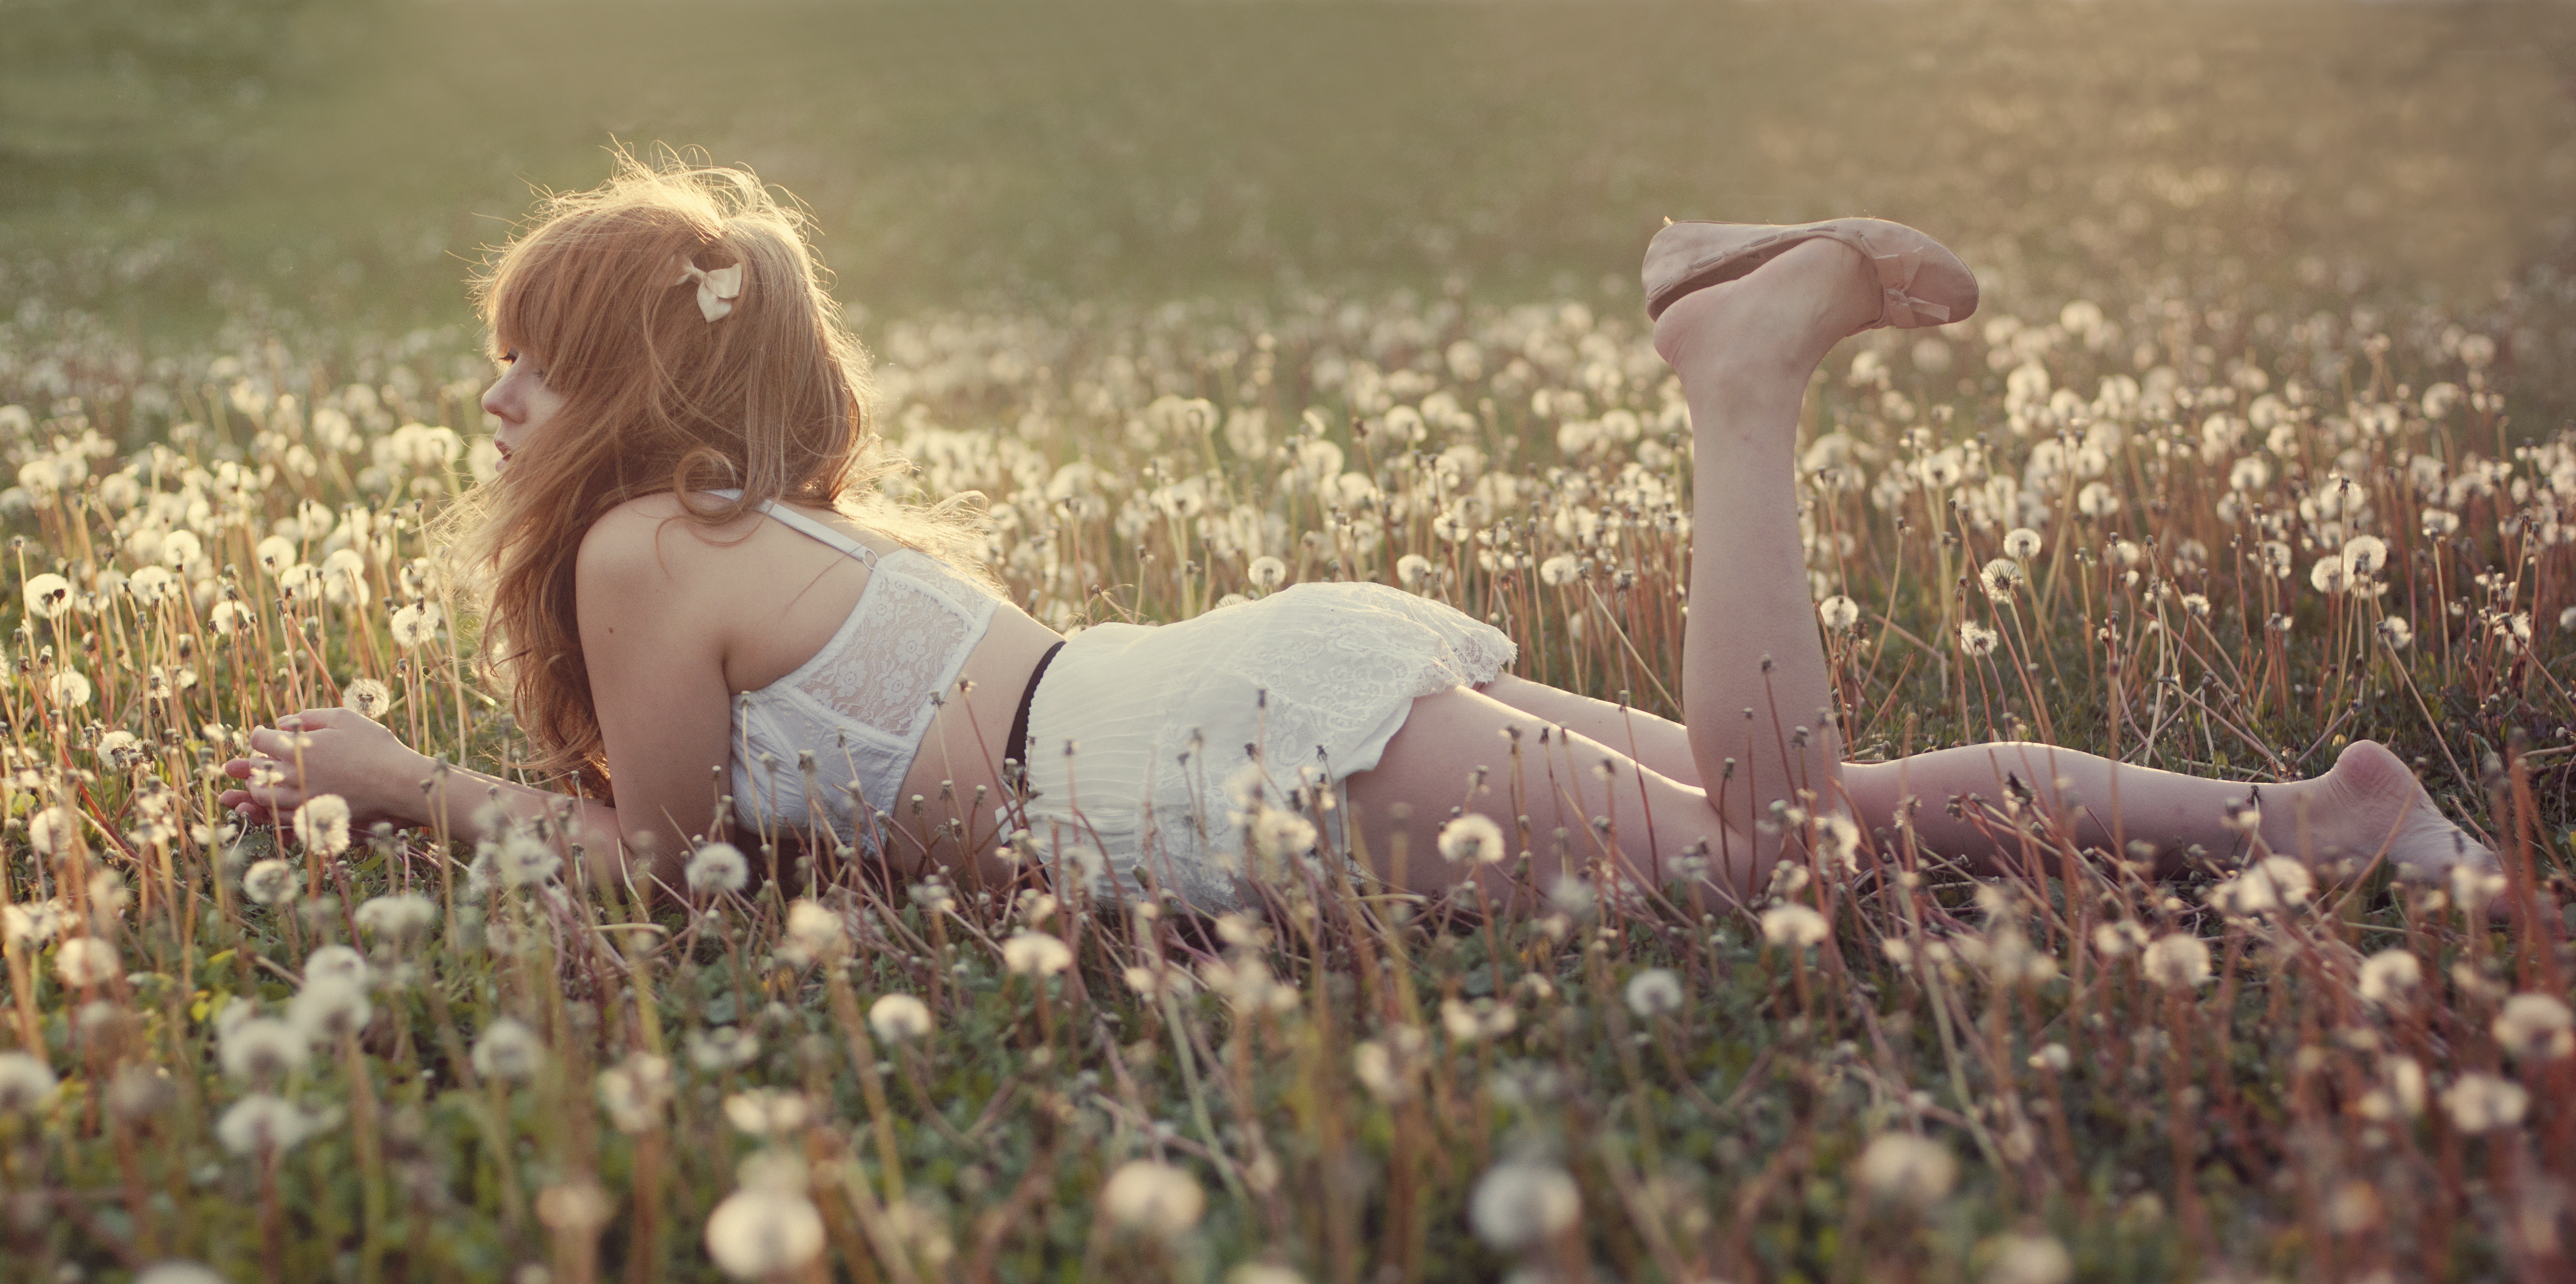 Бесплатное фото Девушка на поле с одуванчиками